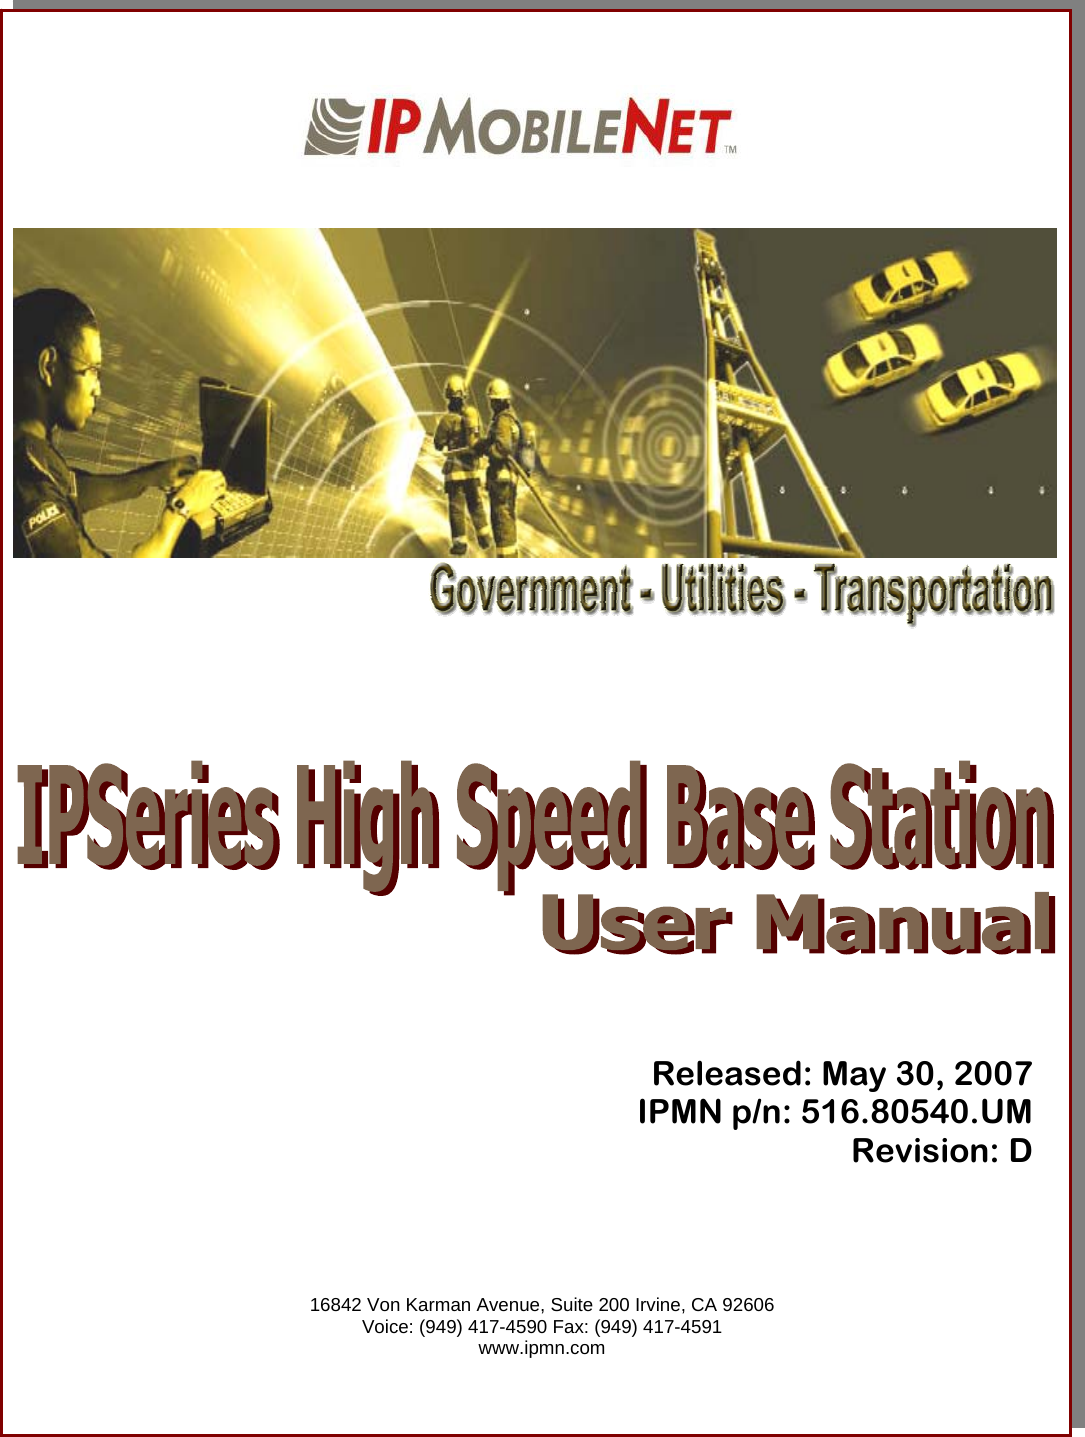                                     Released: May 30, 2007 IPMN p/n: 516.80540.UM Revision: D      16842 Von Karman Avenue, Suite 200 Irvine, CA 92606 Voice: (949) 417-4590 Fax: (949) 417-4591 www.ipmn.com